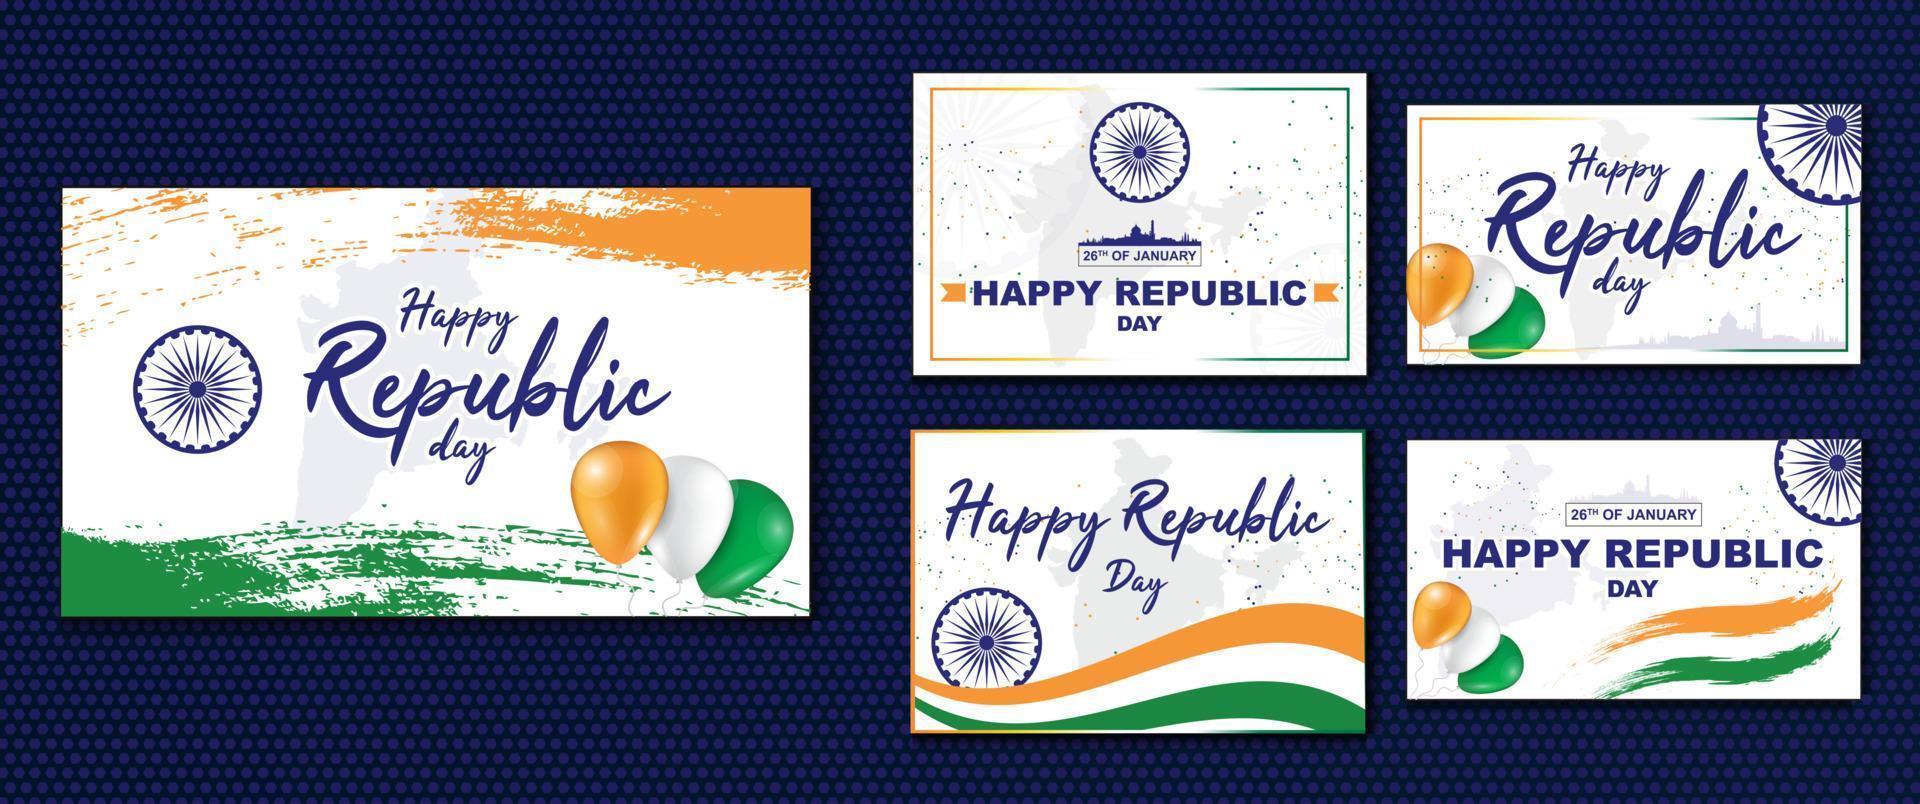 joyeux jour de la république de l'inde - 26 janvier. illustrations patriotiques avec le drapeau indien. modèle pour bannière ou affiche. vecteur